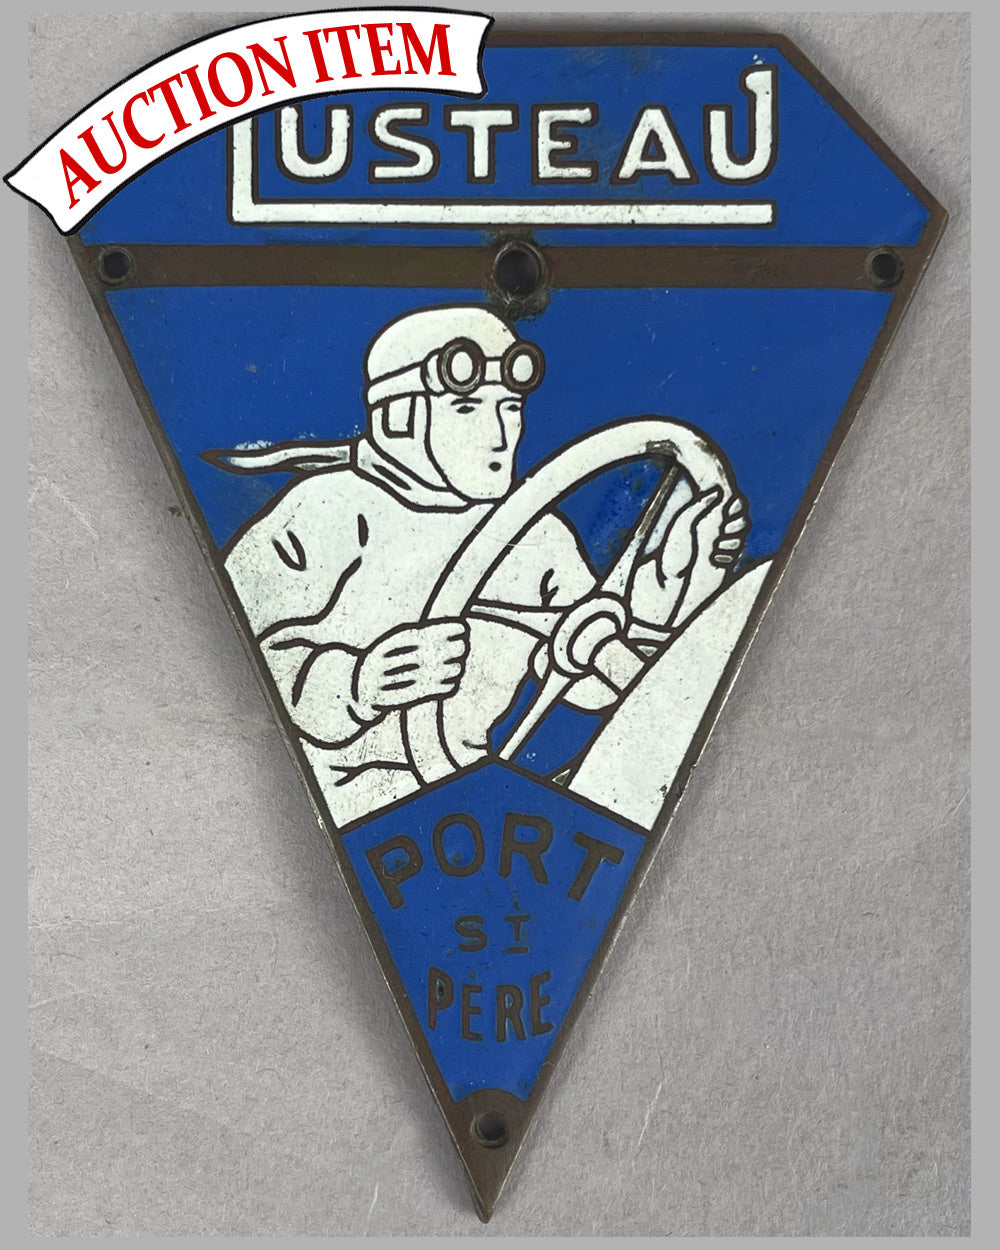 9 - Garage Lusteau pre-war dashboard badge / plaque